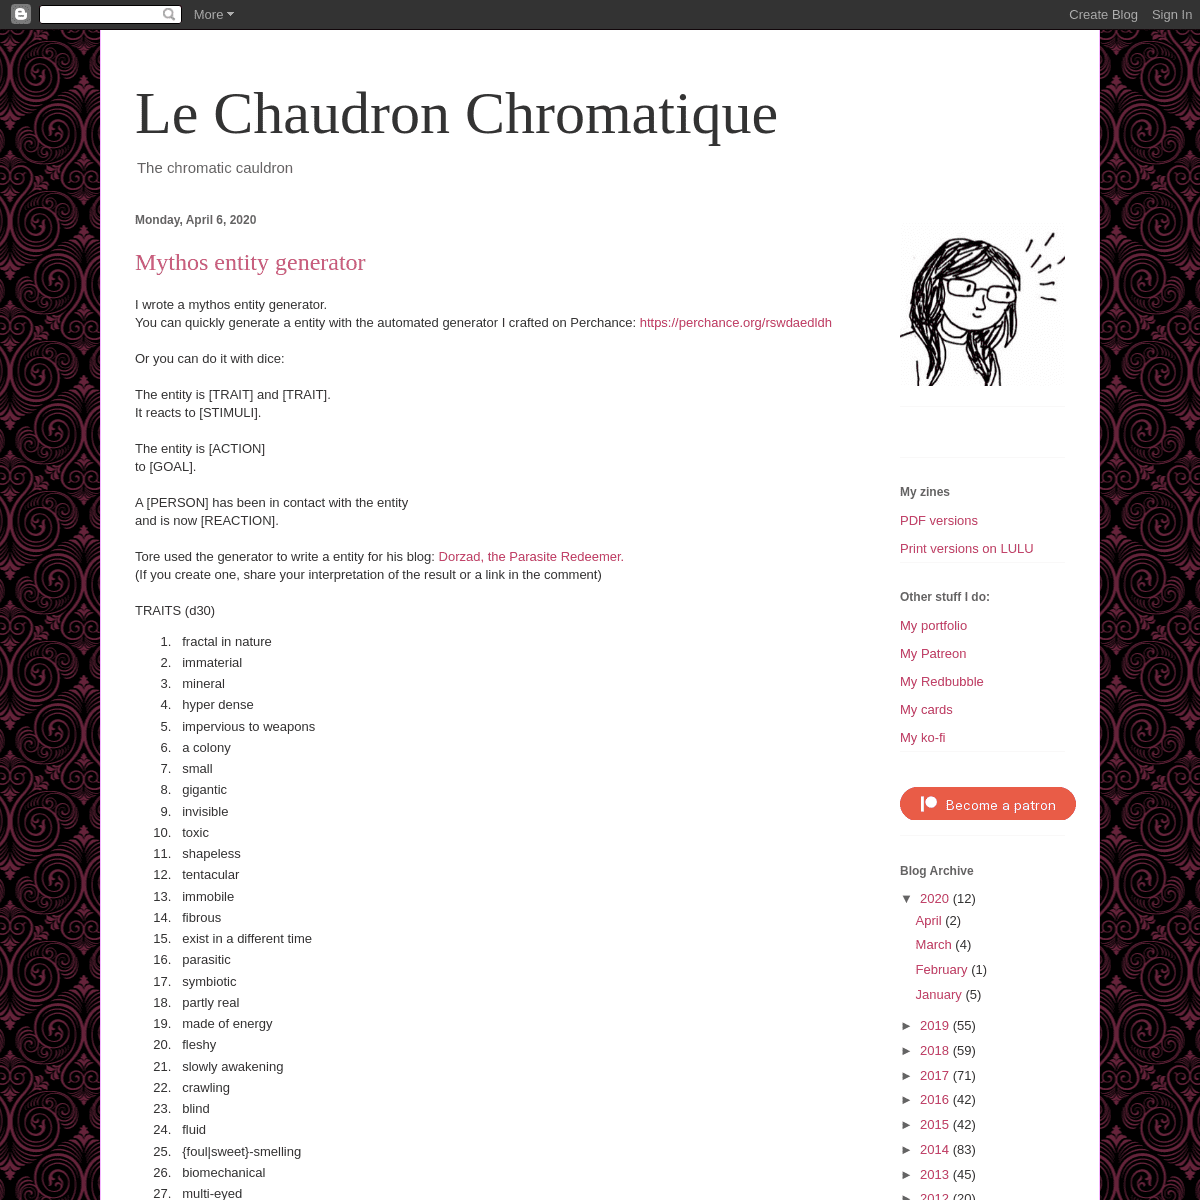 A complete backup of chaudronchromatique.blogspot.com